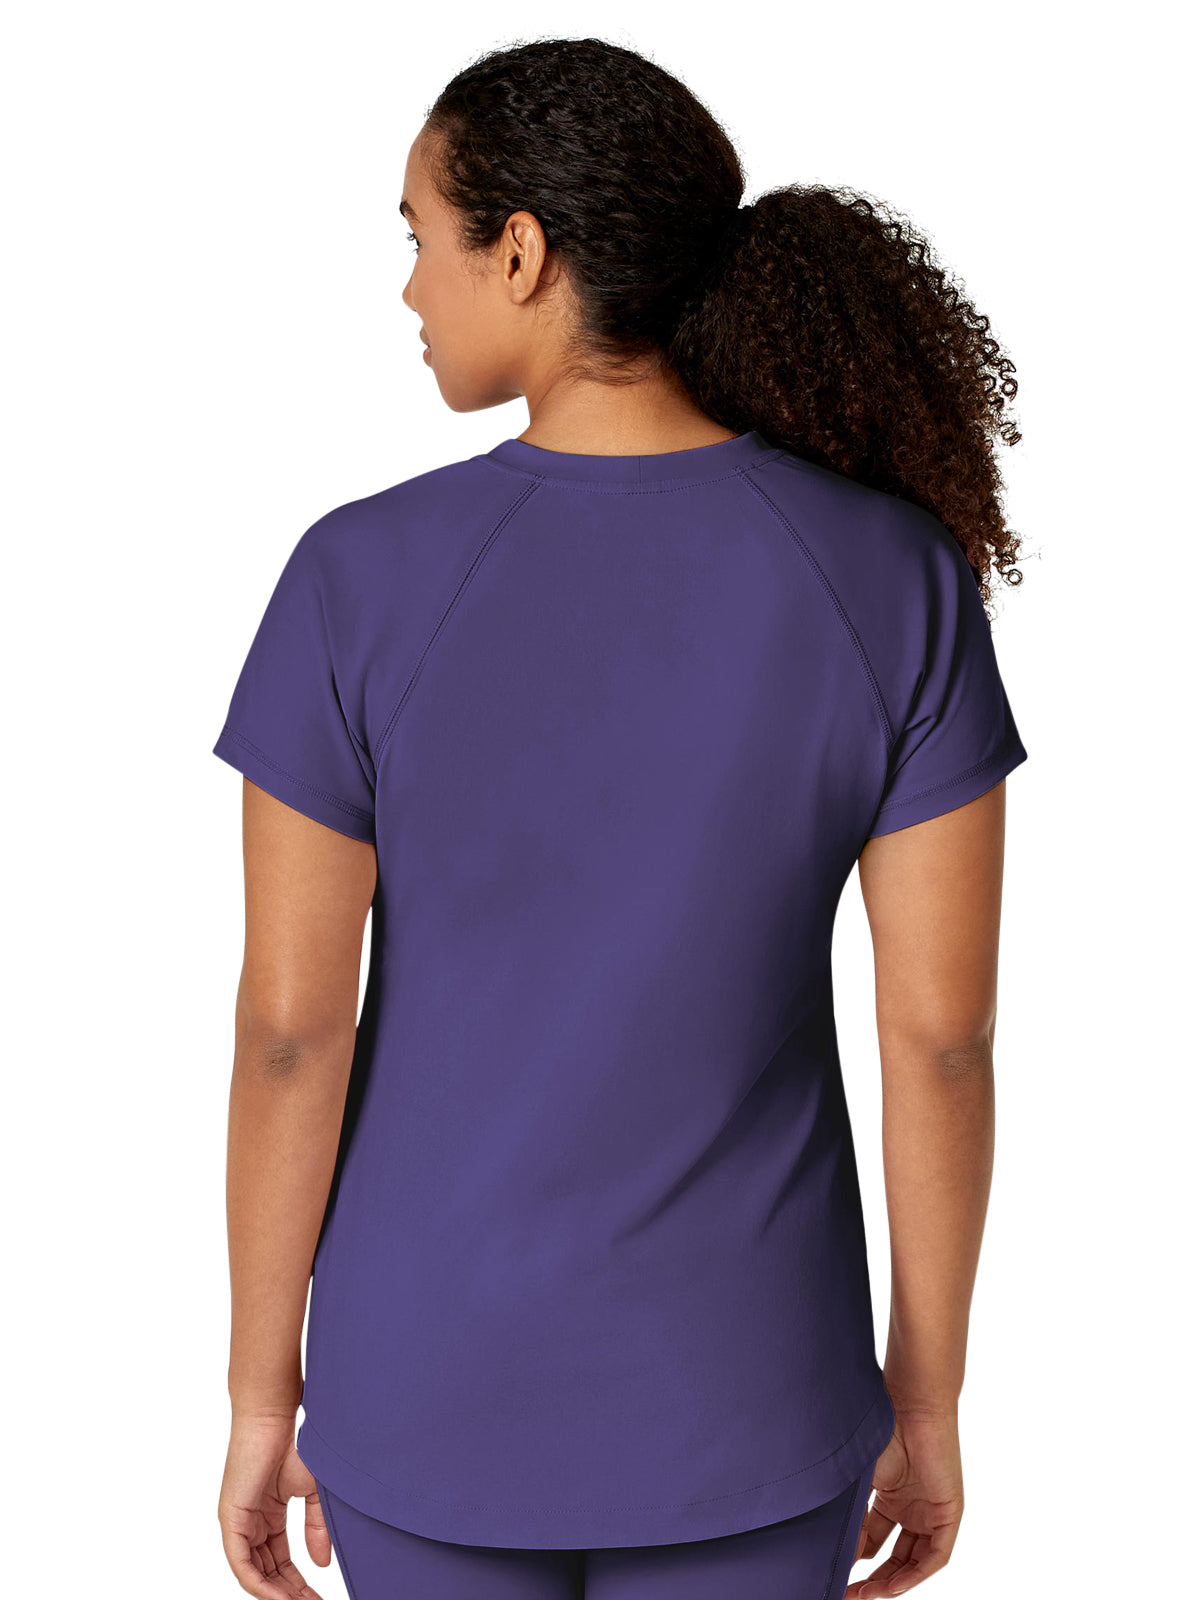 Women's Yoga Tunic Top - 6534 - Grape